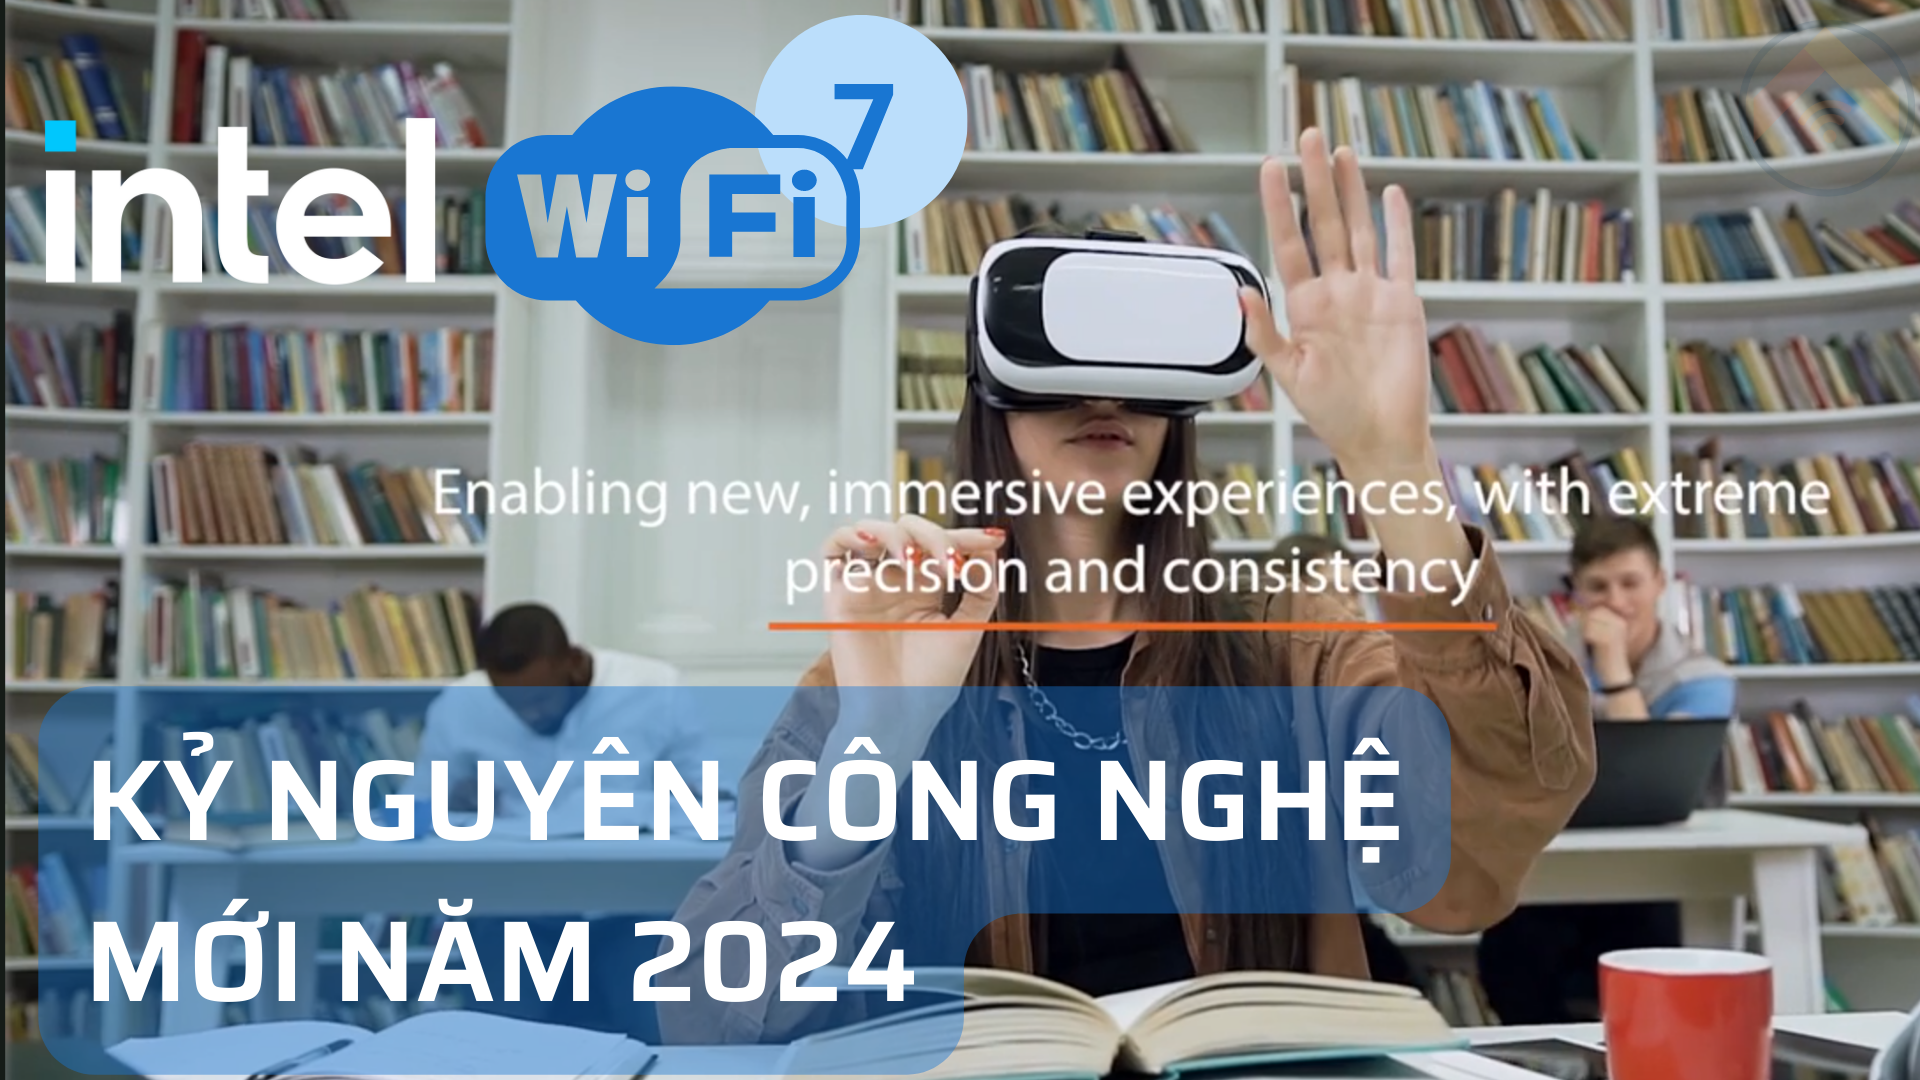 Intel giới thiệu Công Nghệ Wi-Fi 7 | KỶ NGUYÊN CÔNG NGHỆ KHÔNG DÂY VÀO NĂM 2024